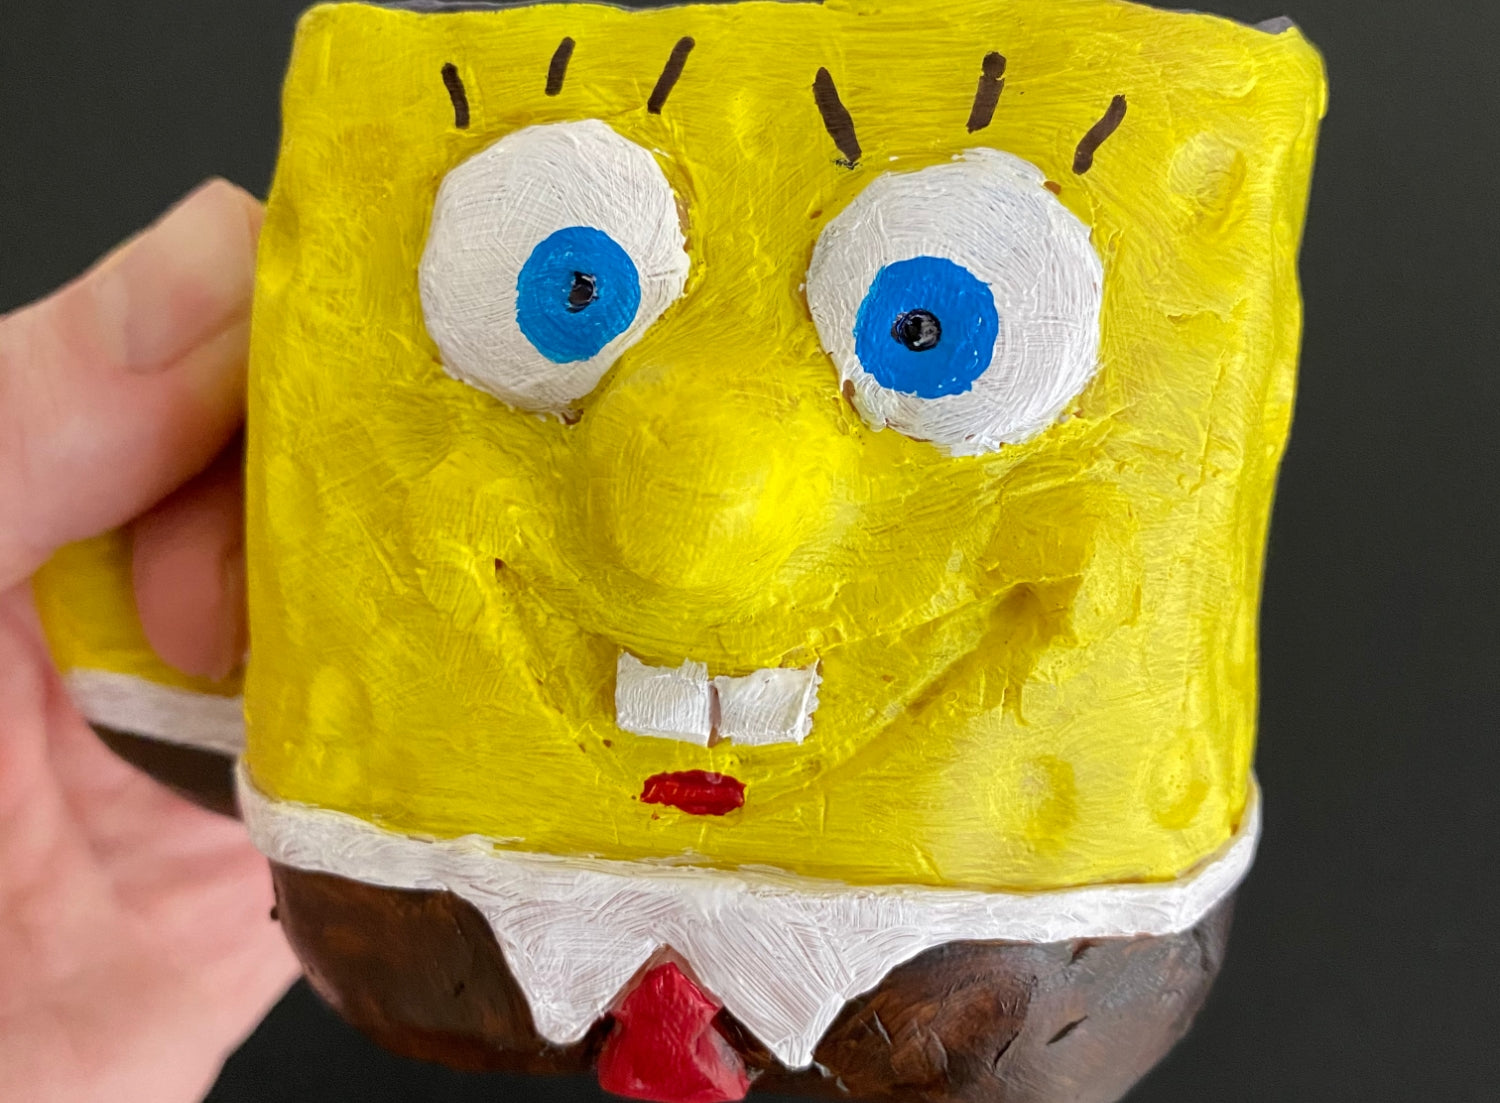 Closeup of Spongebob Squaremug.